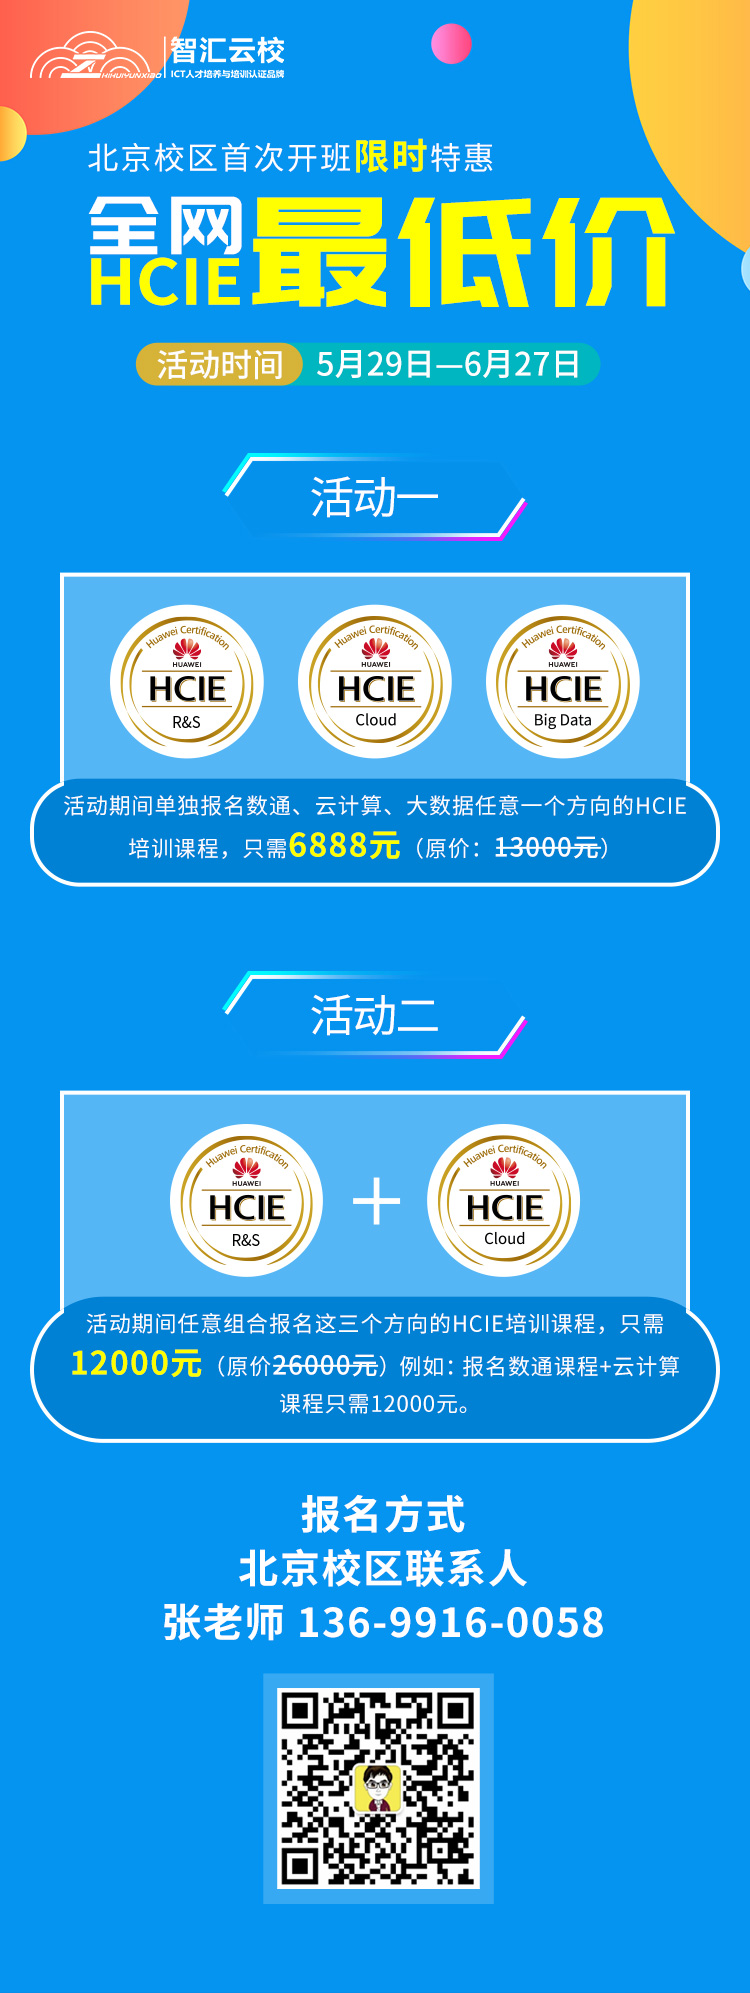 华为HCIE培训班.jpg